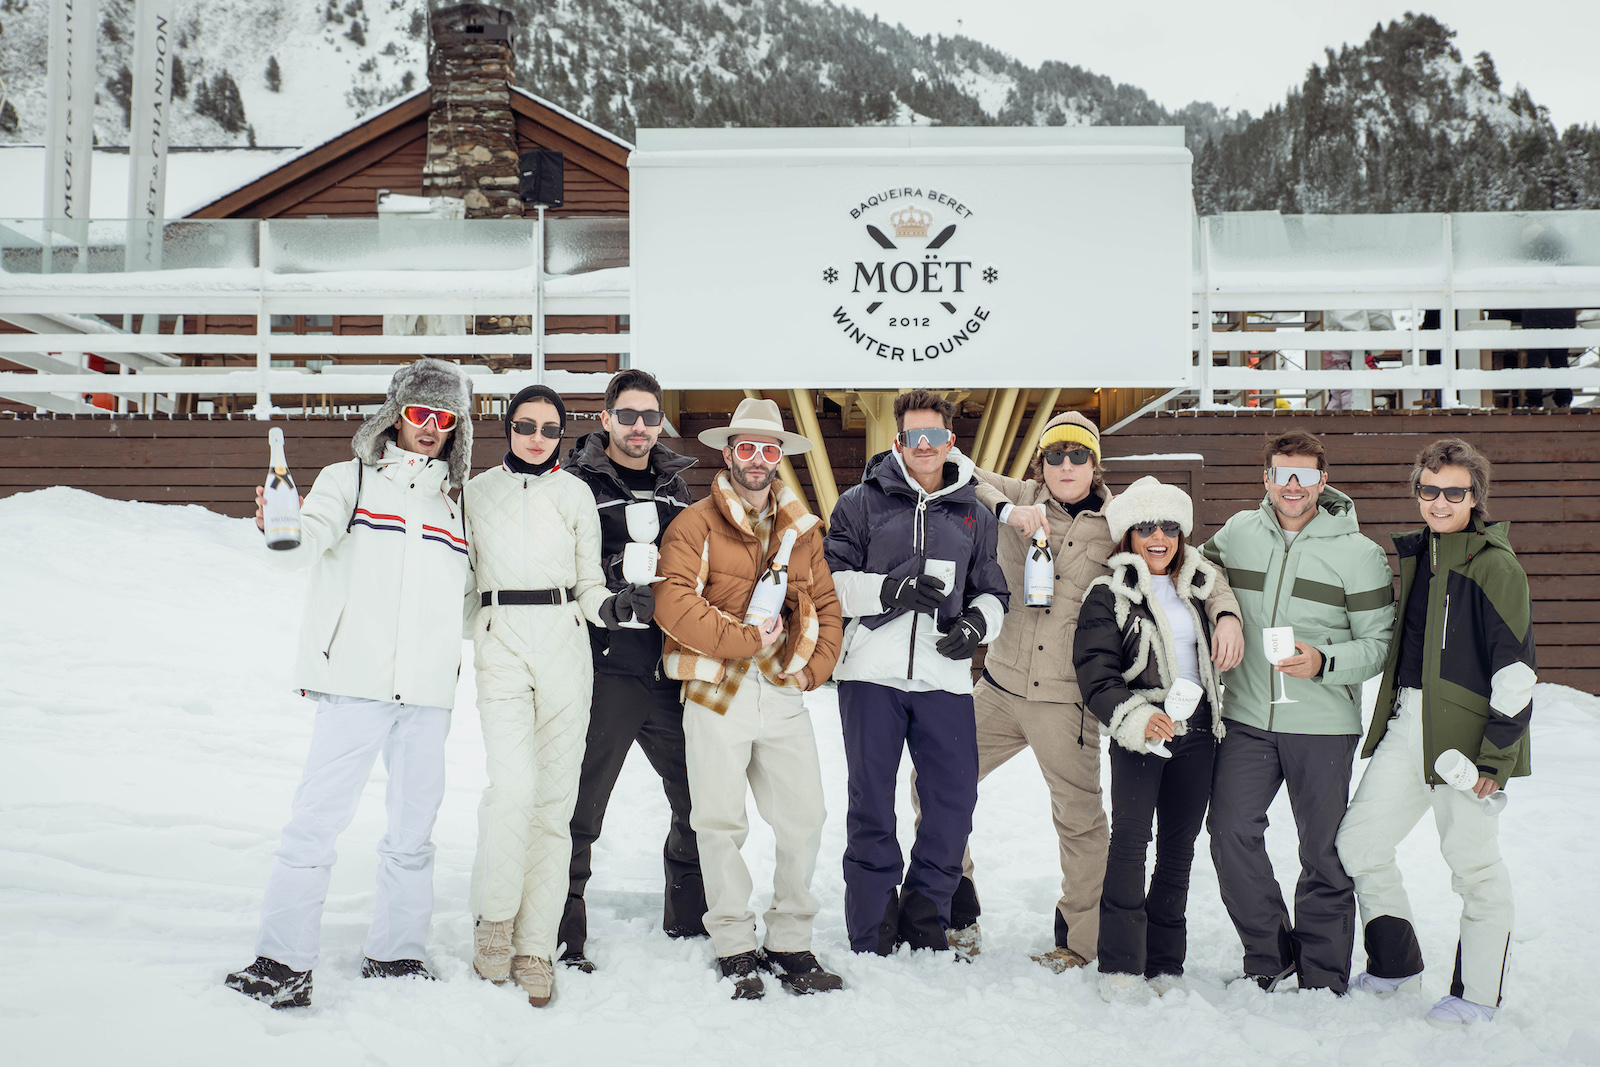 imagen 2 de Möet Winter Lounge: esquí, Navidad y lujo en Baqueira-Beret.